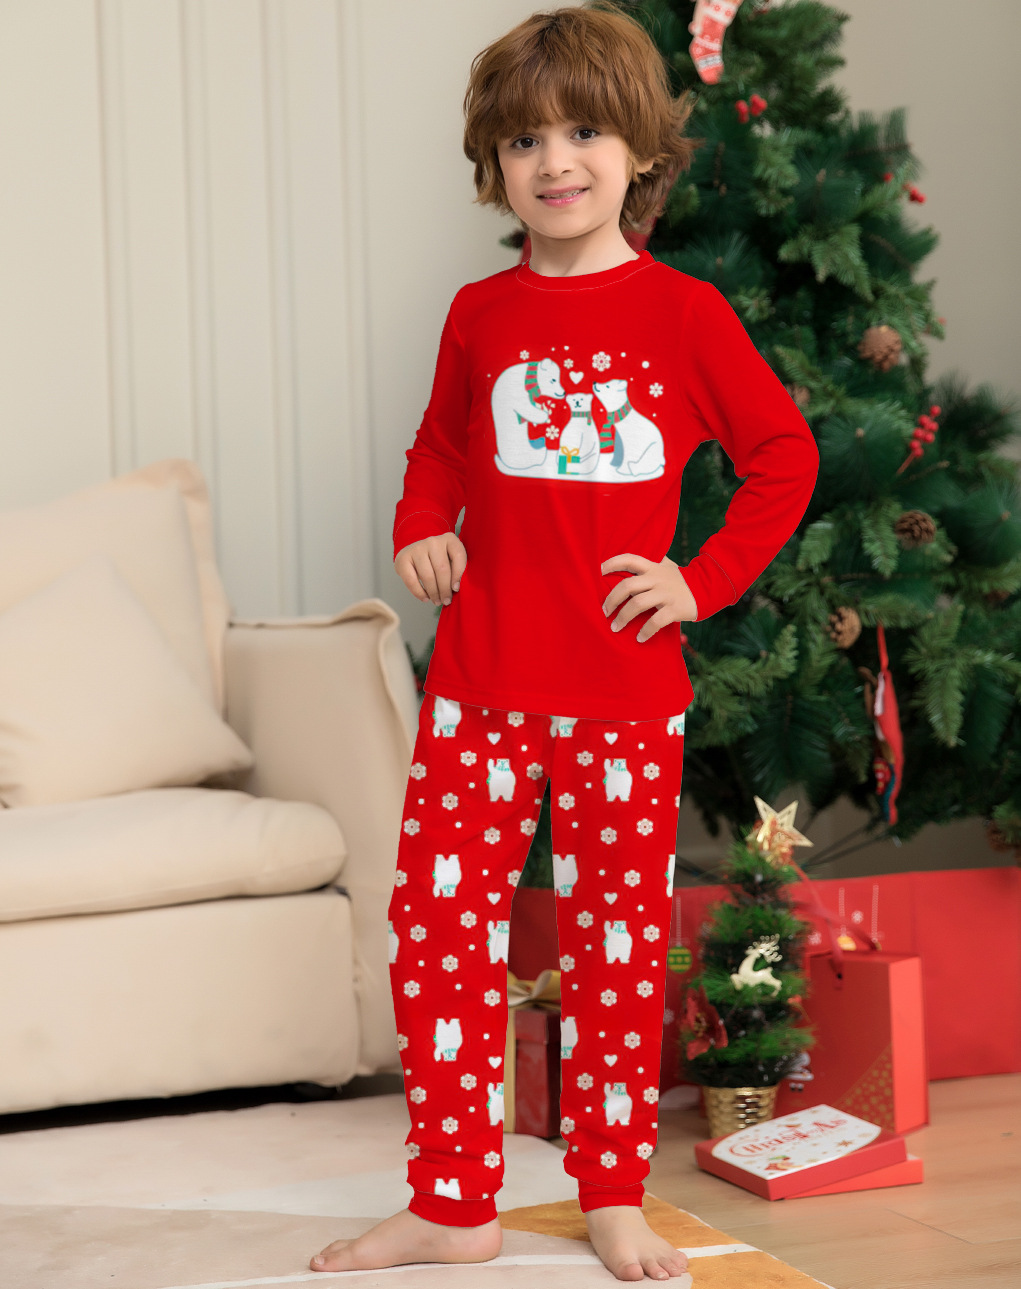 Matching family Christmas pyjamas